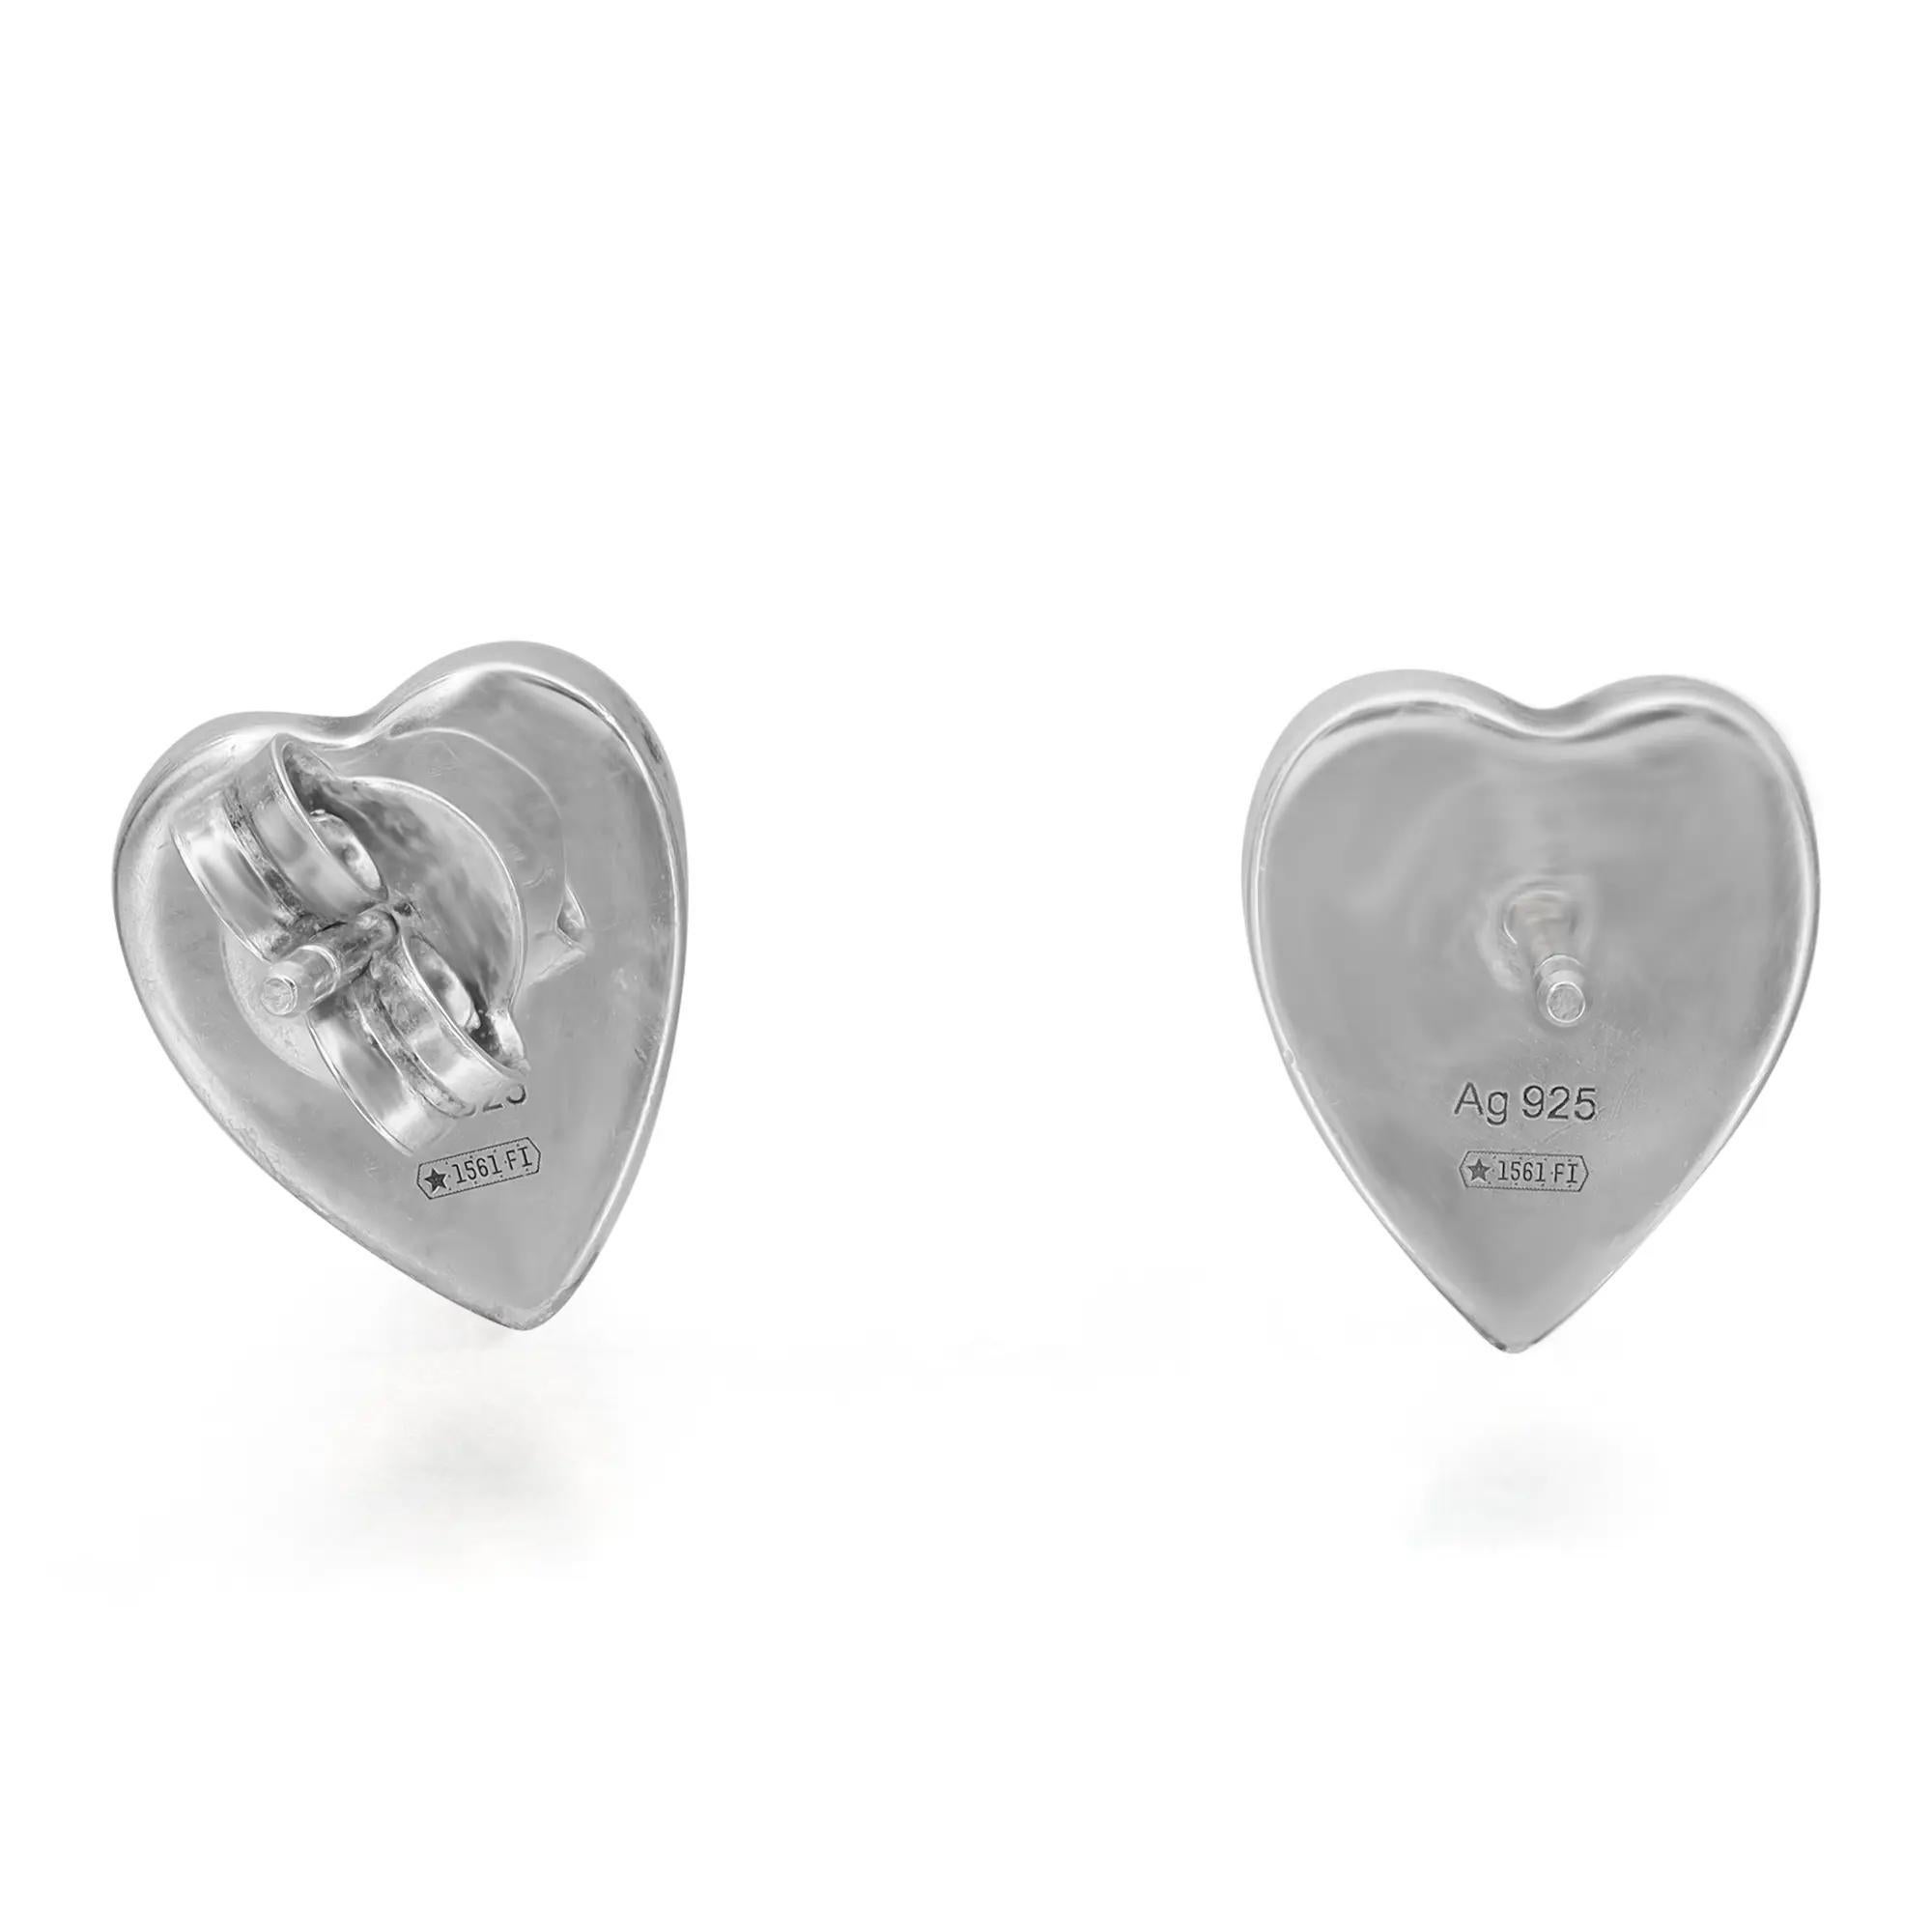 heart shaped gucci earrings